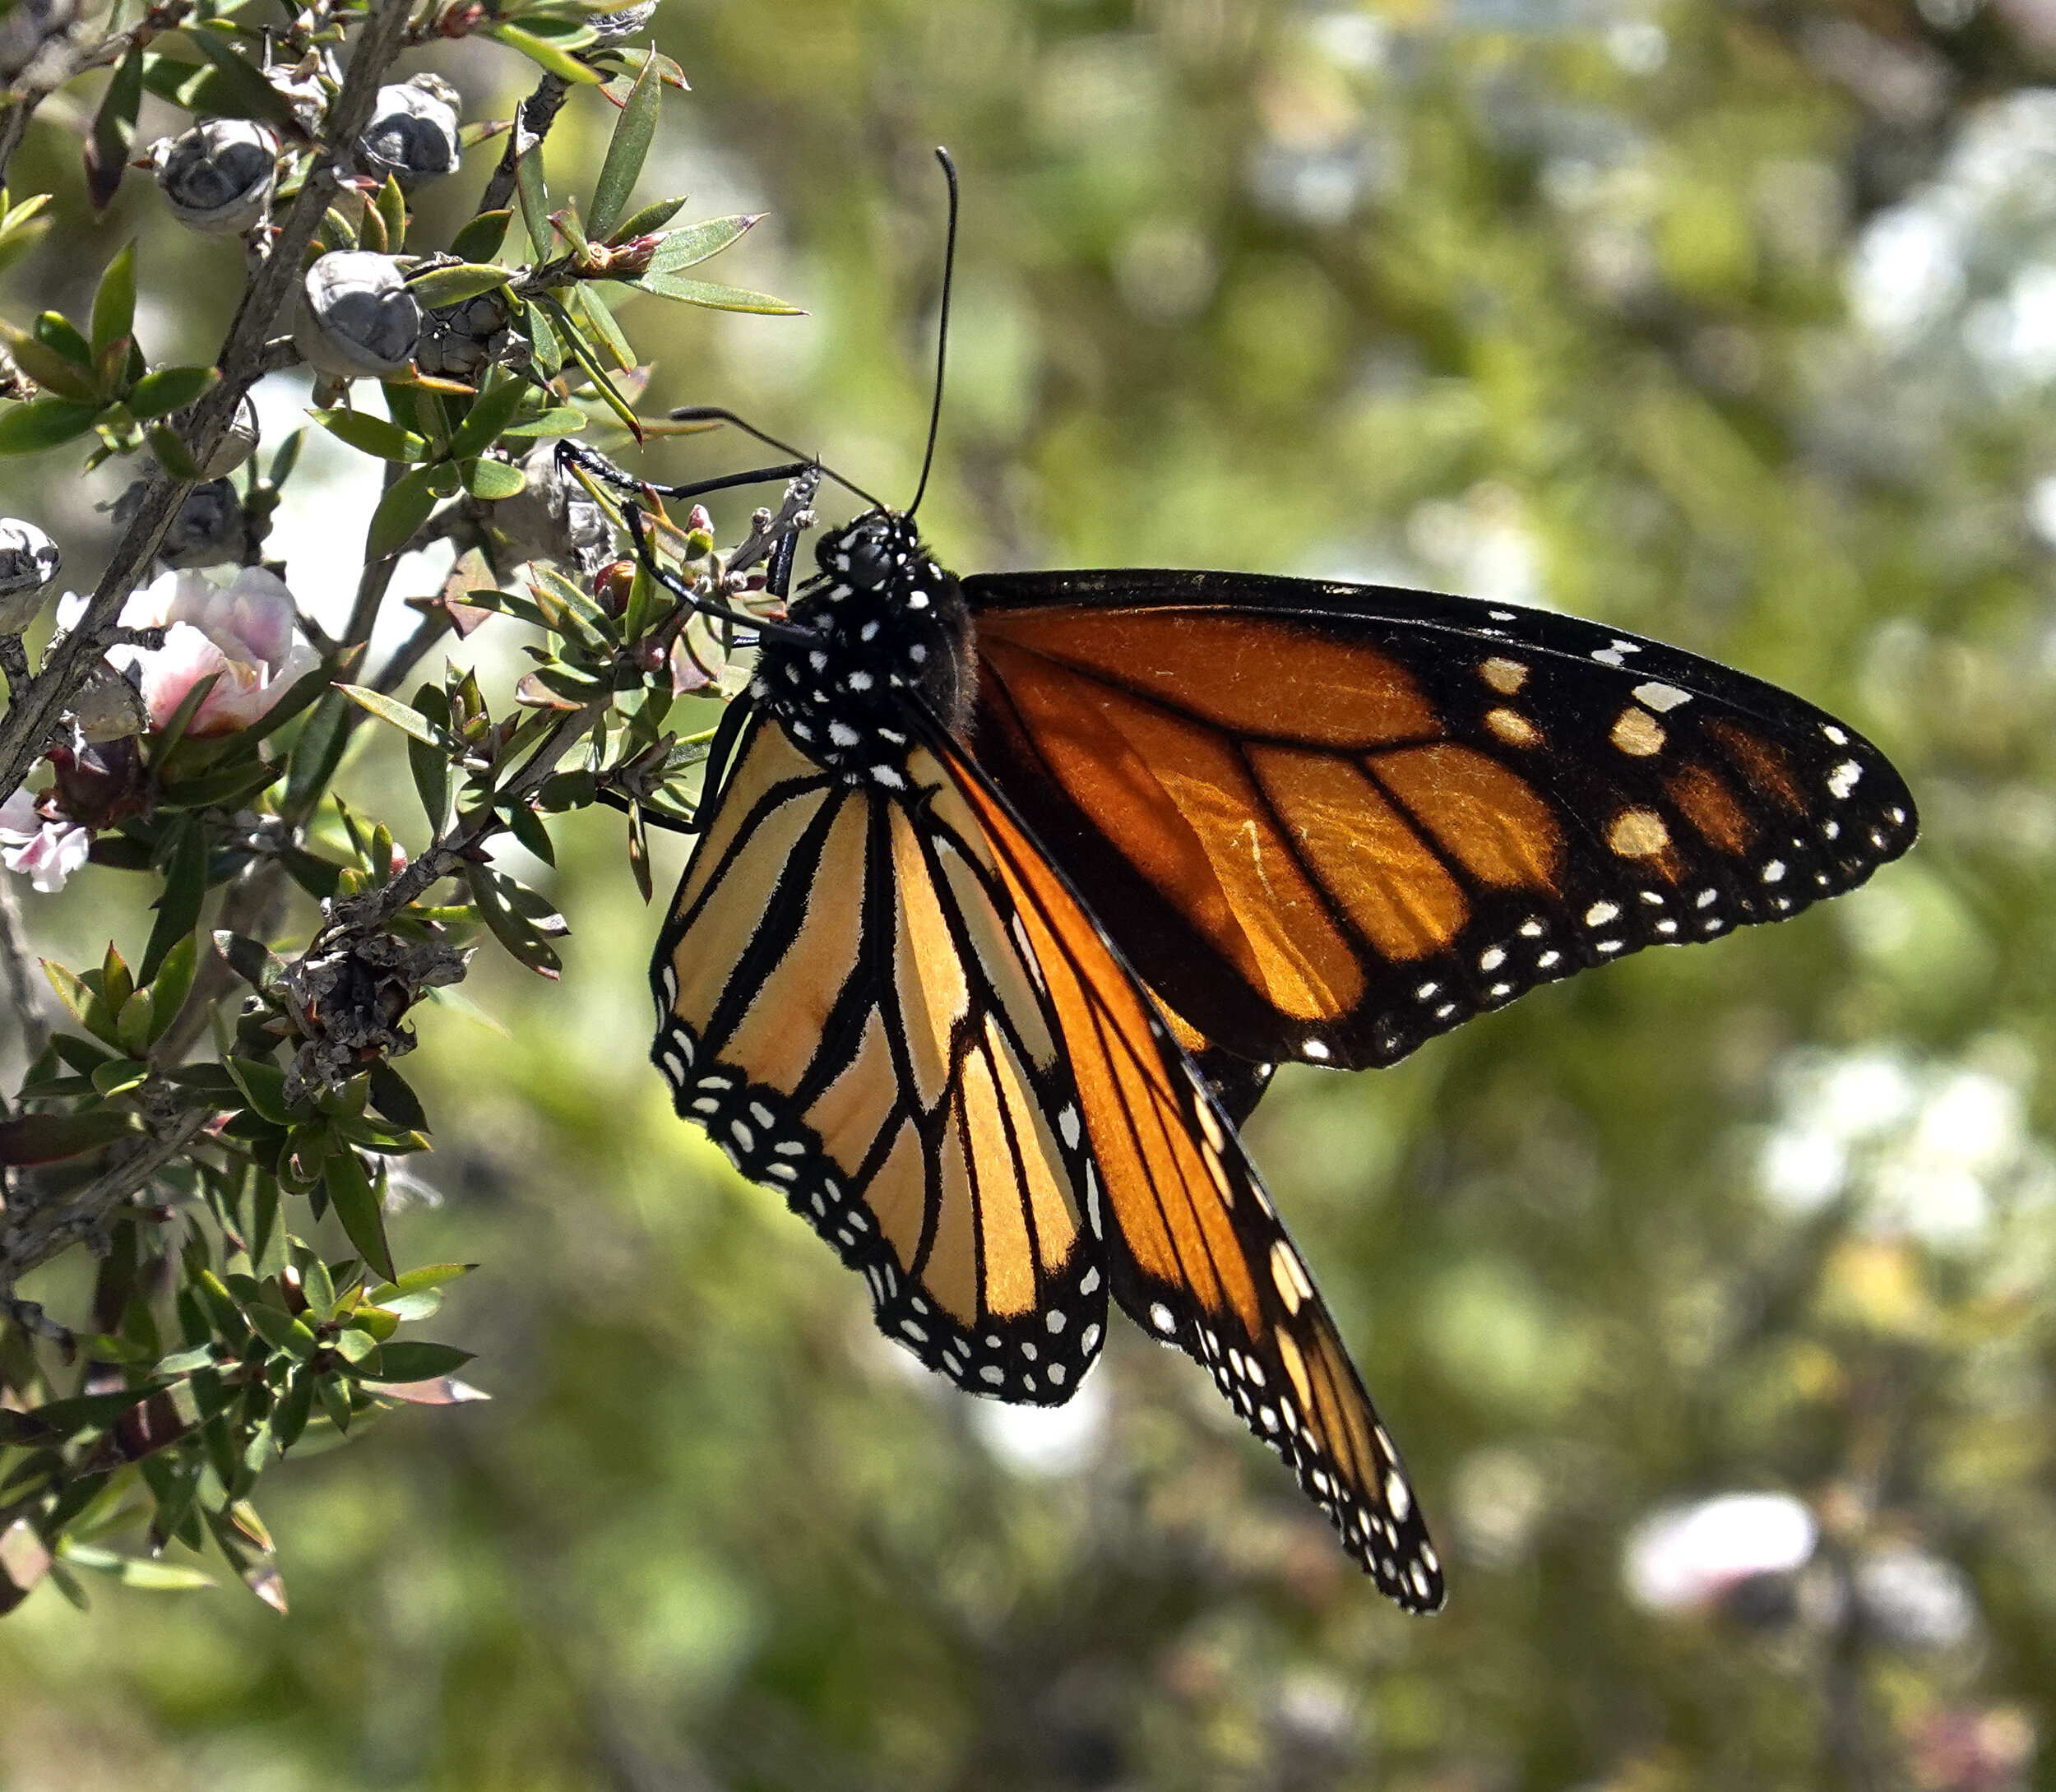  Monarch butterfly in a neighbor’s garden. 